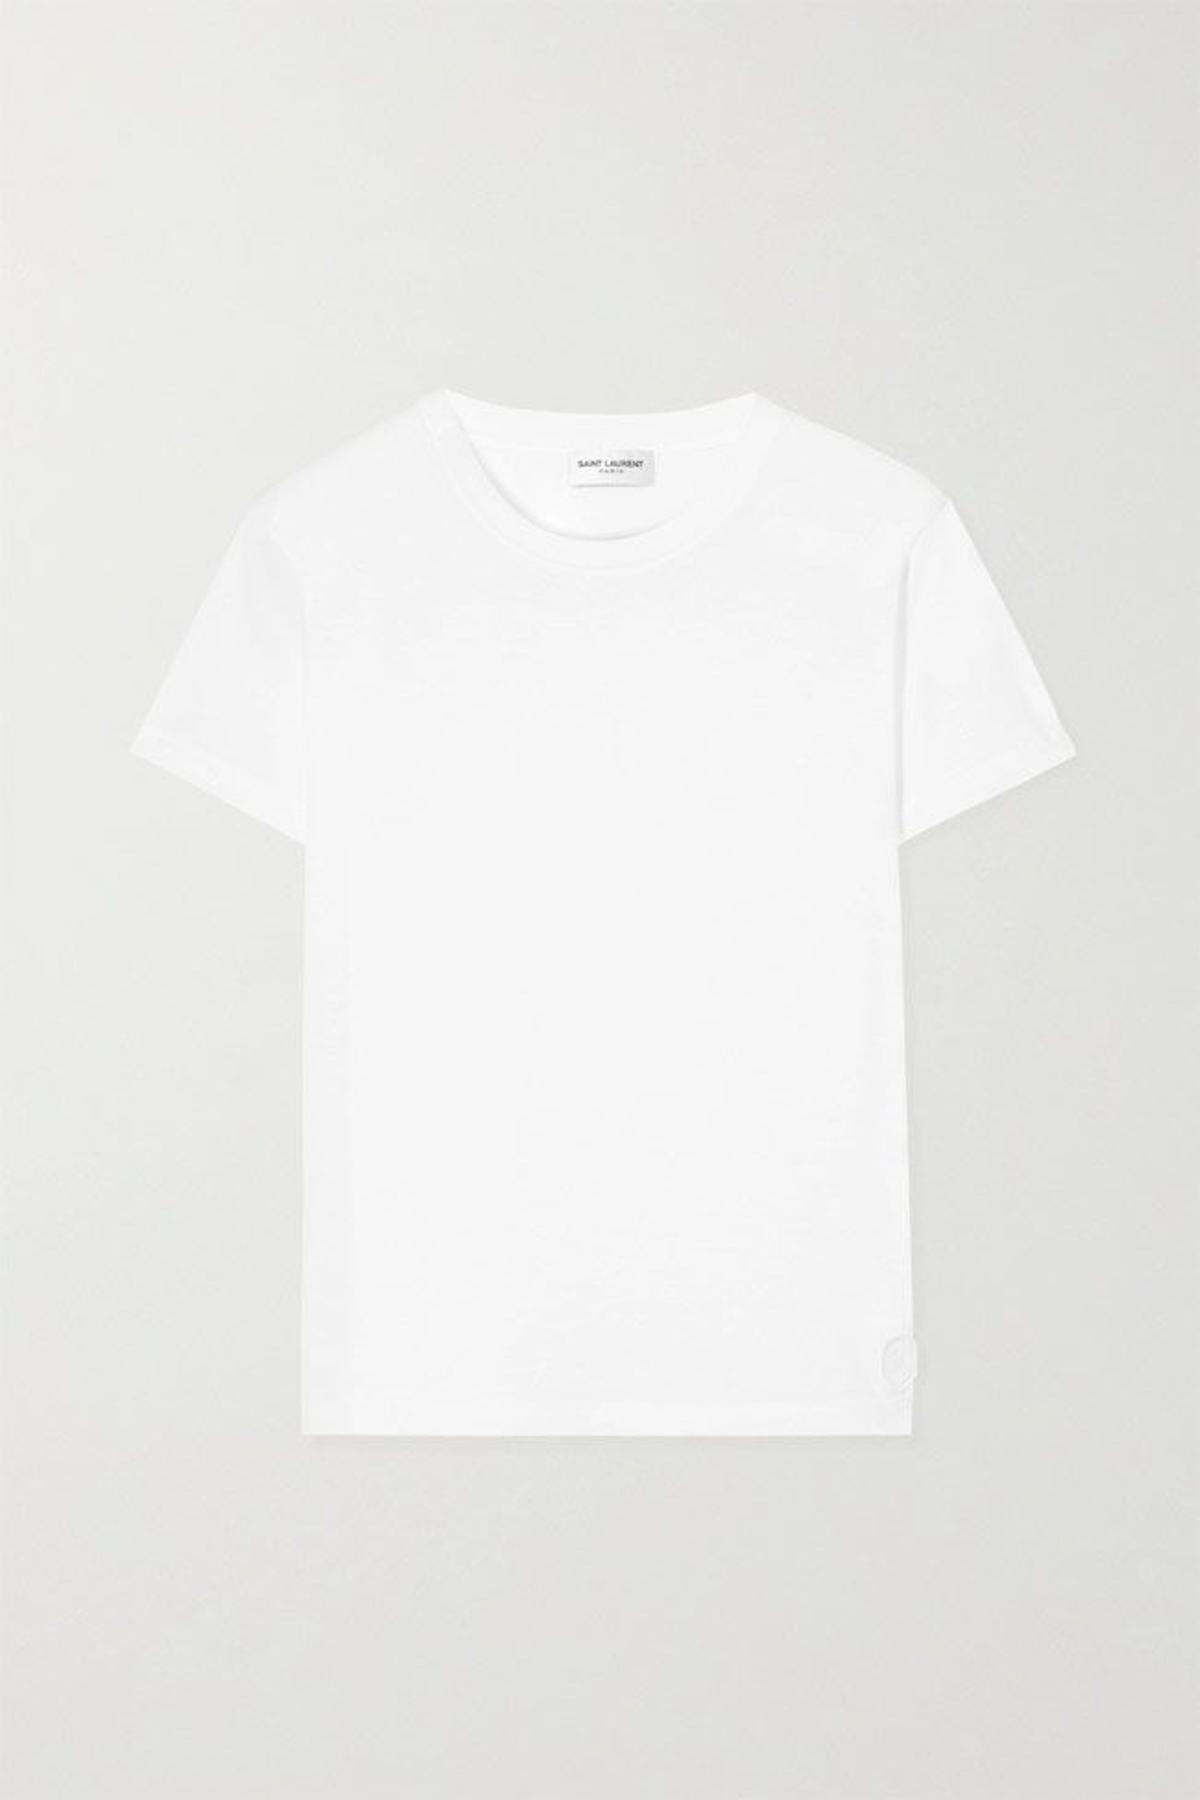 Camiseta blanca de algodón, de Saint Laurent